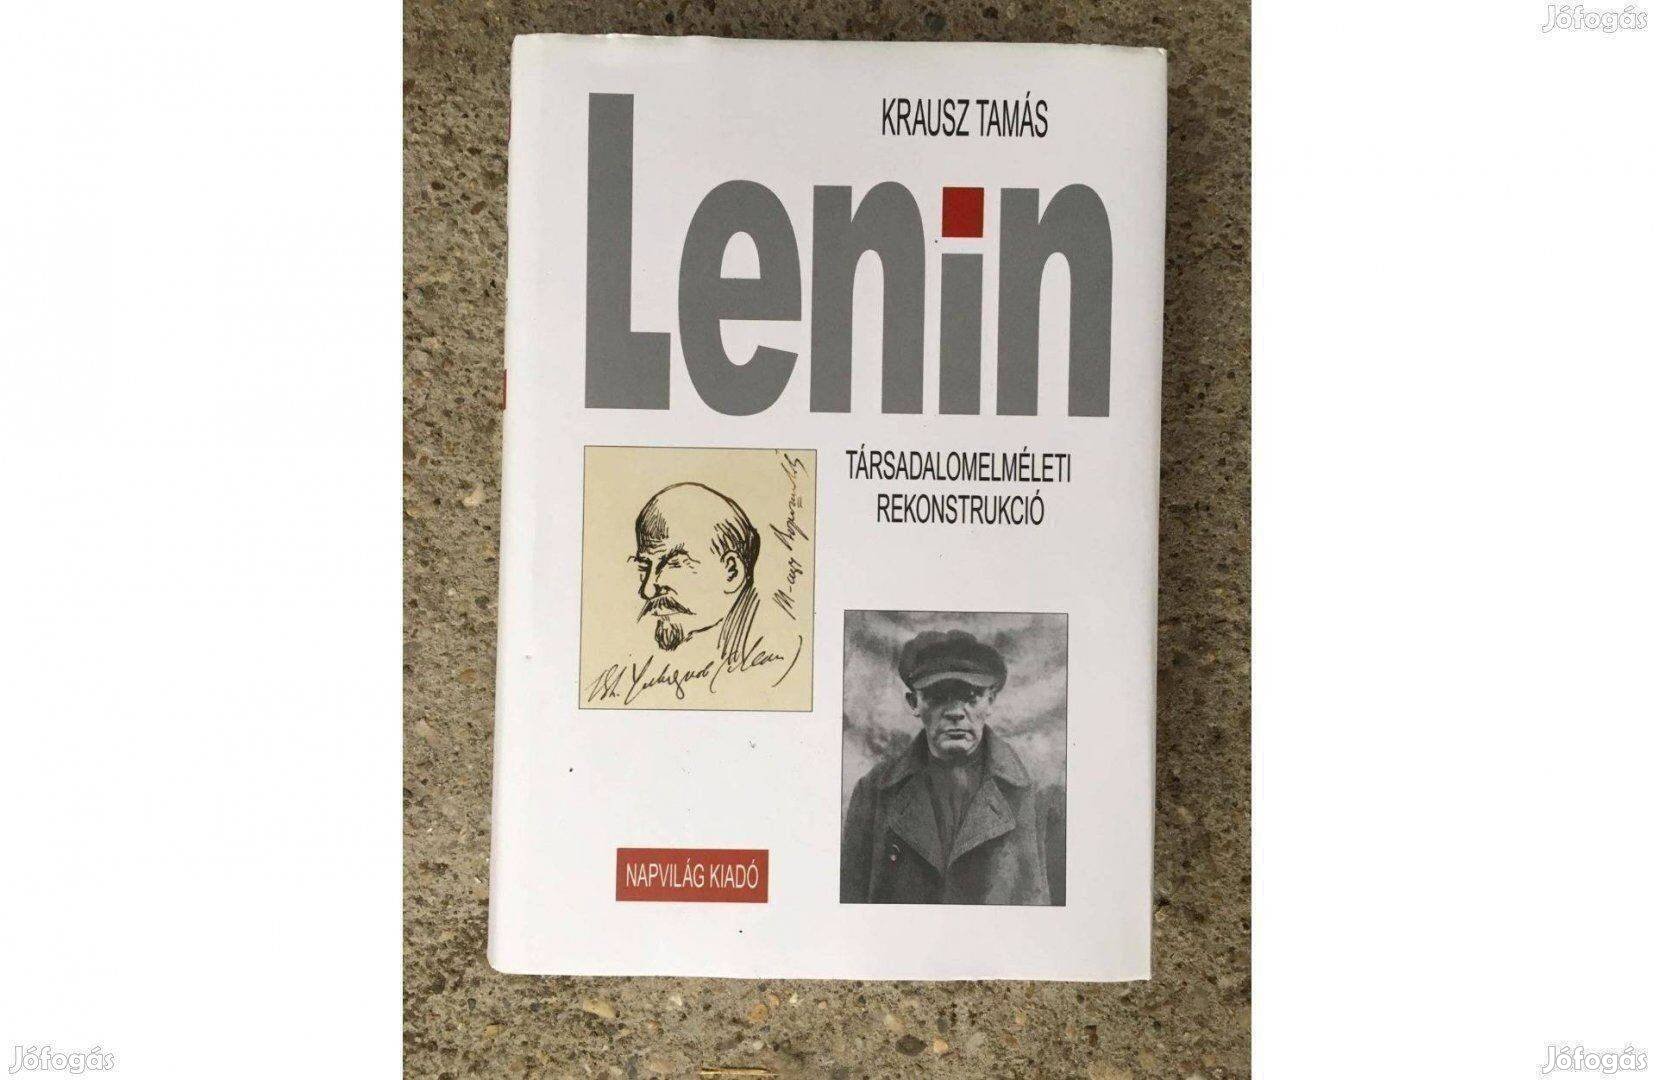 Krausz Tamás Lenin Társadalomelméleti rekonstrukció